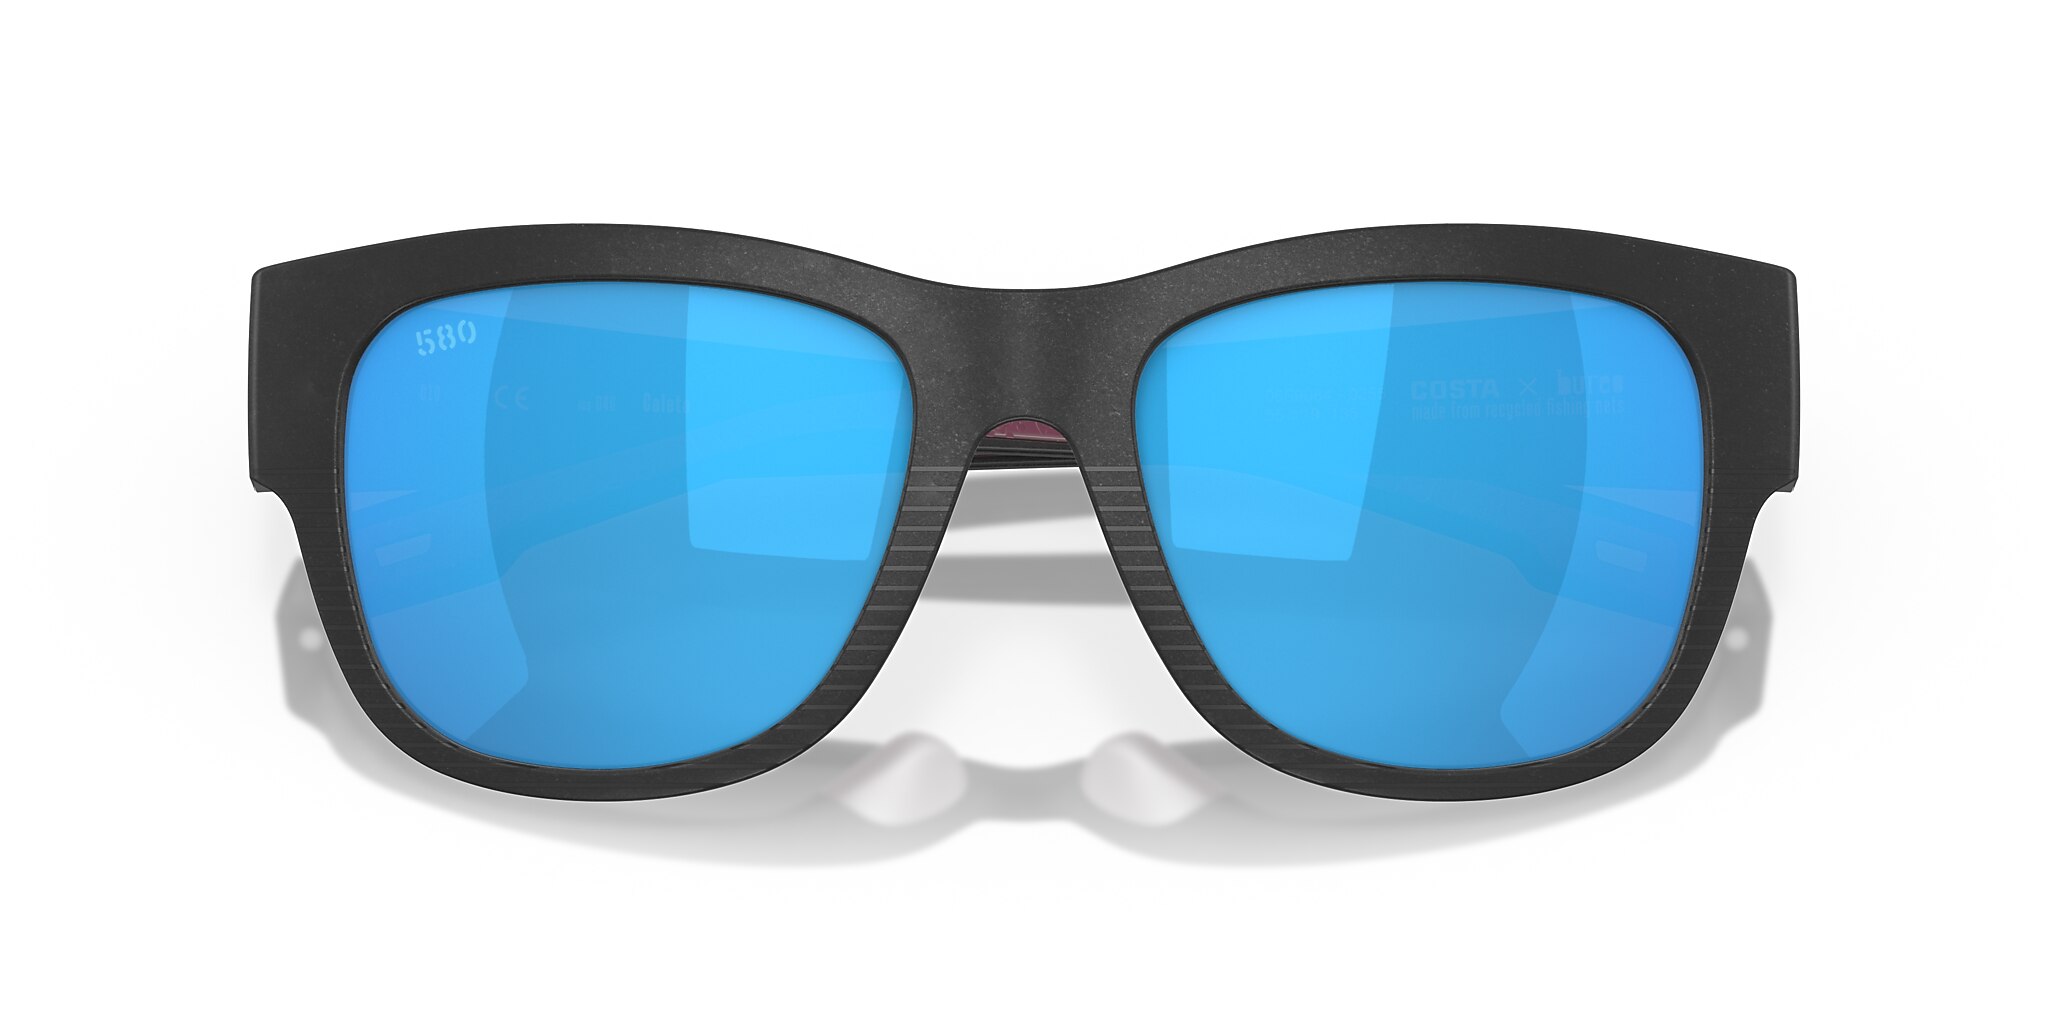 Caleta Polarised Sunglasses in Blue Mirror | Costa Del Mar®